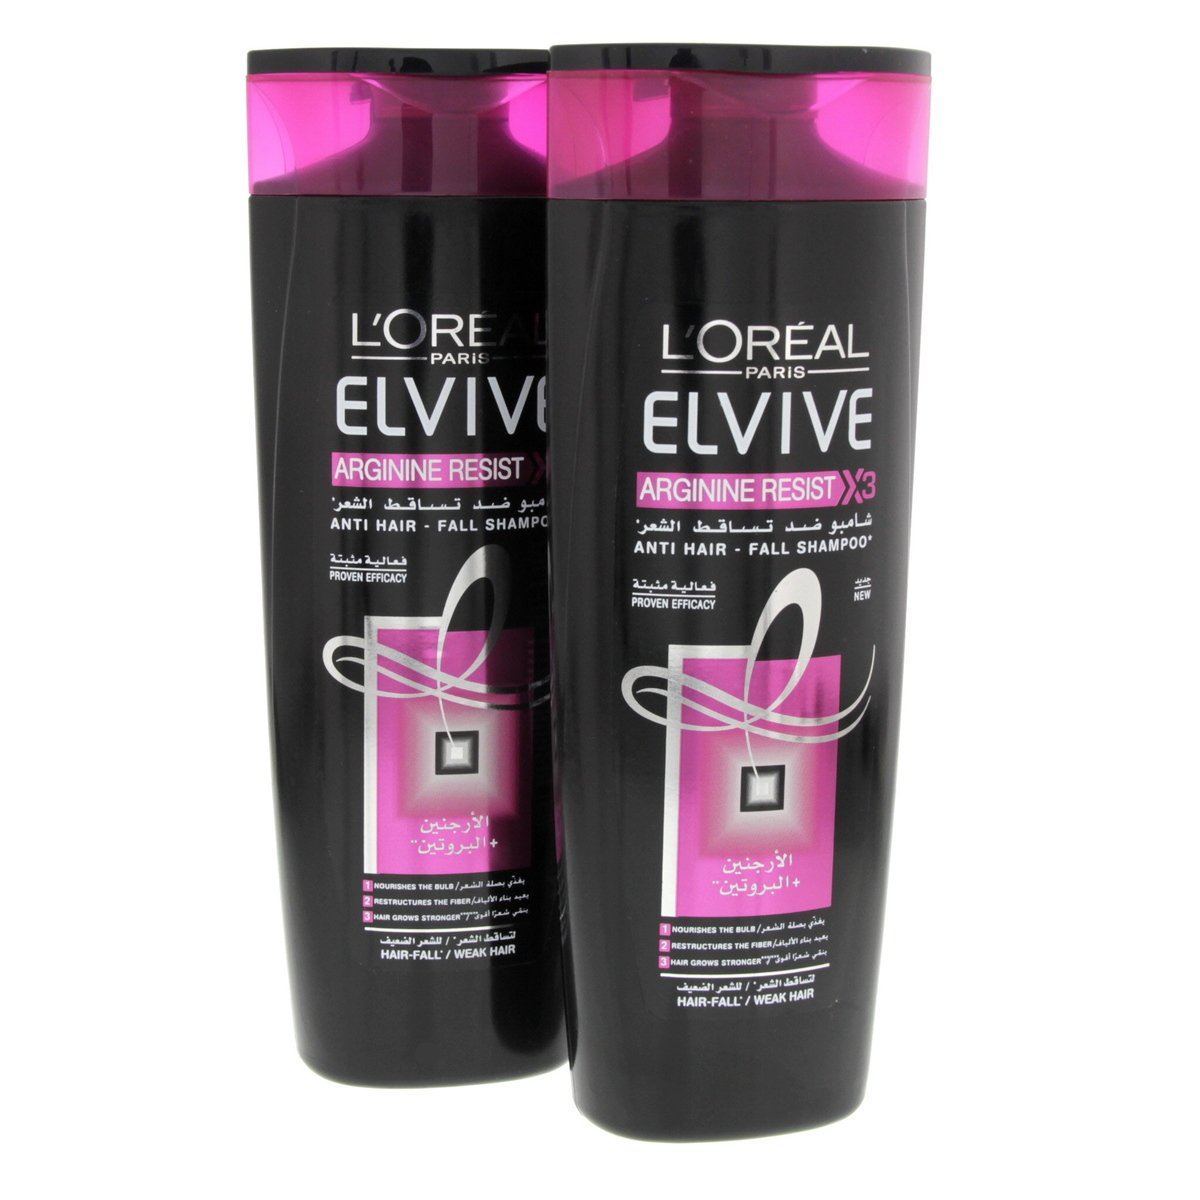 L'Oreal Elvive Arginine Resist Shampoo 2 x 400 ml